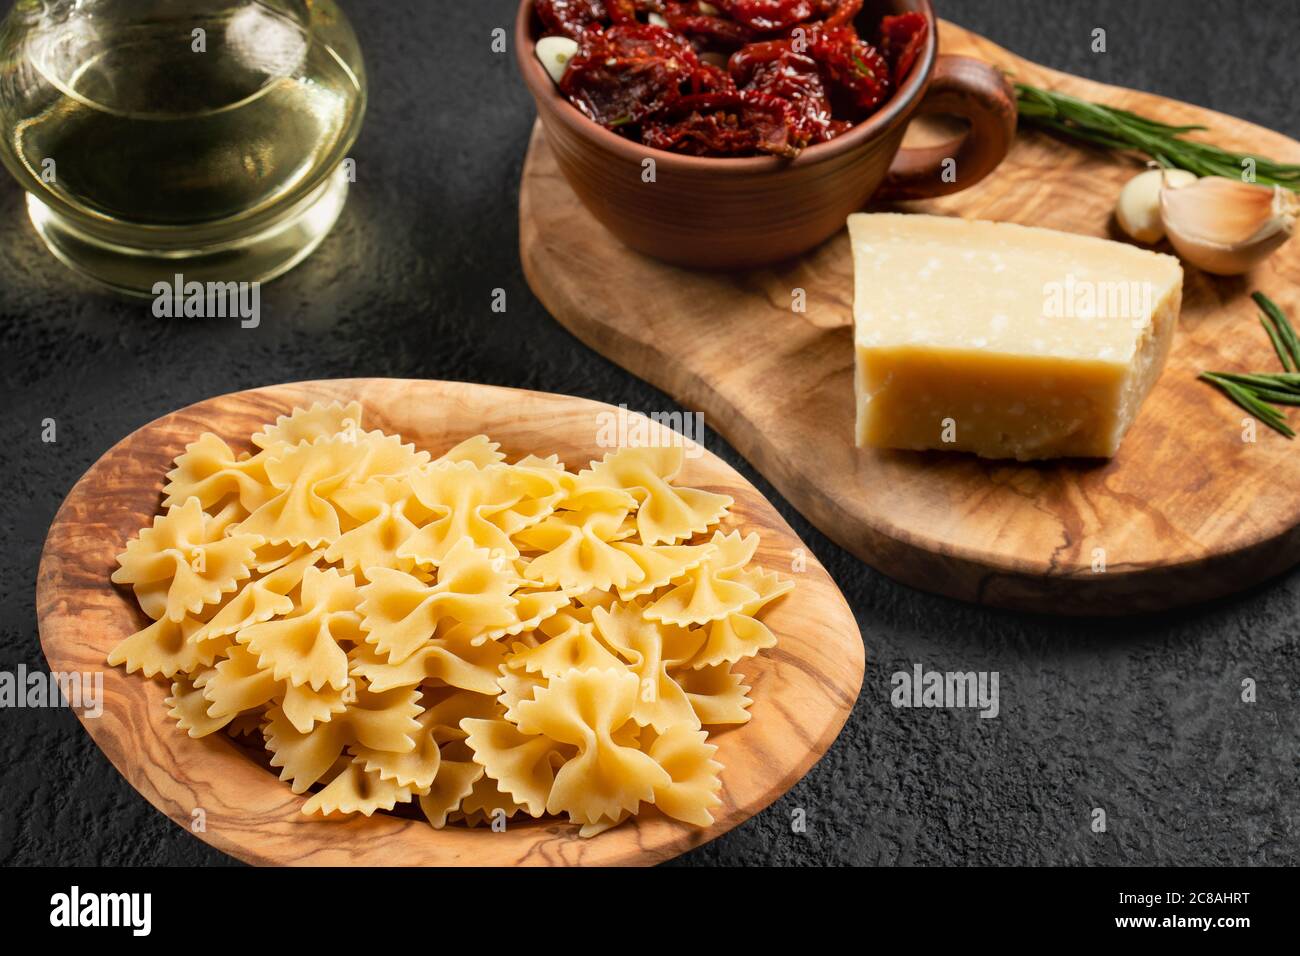 Préparation de la cuisson des pâtes avec des tomates séchées et du parmesan. Cuisine italienne, ingrédients Banque D'Images